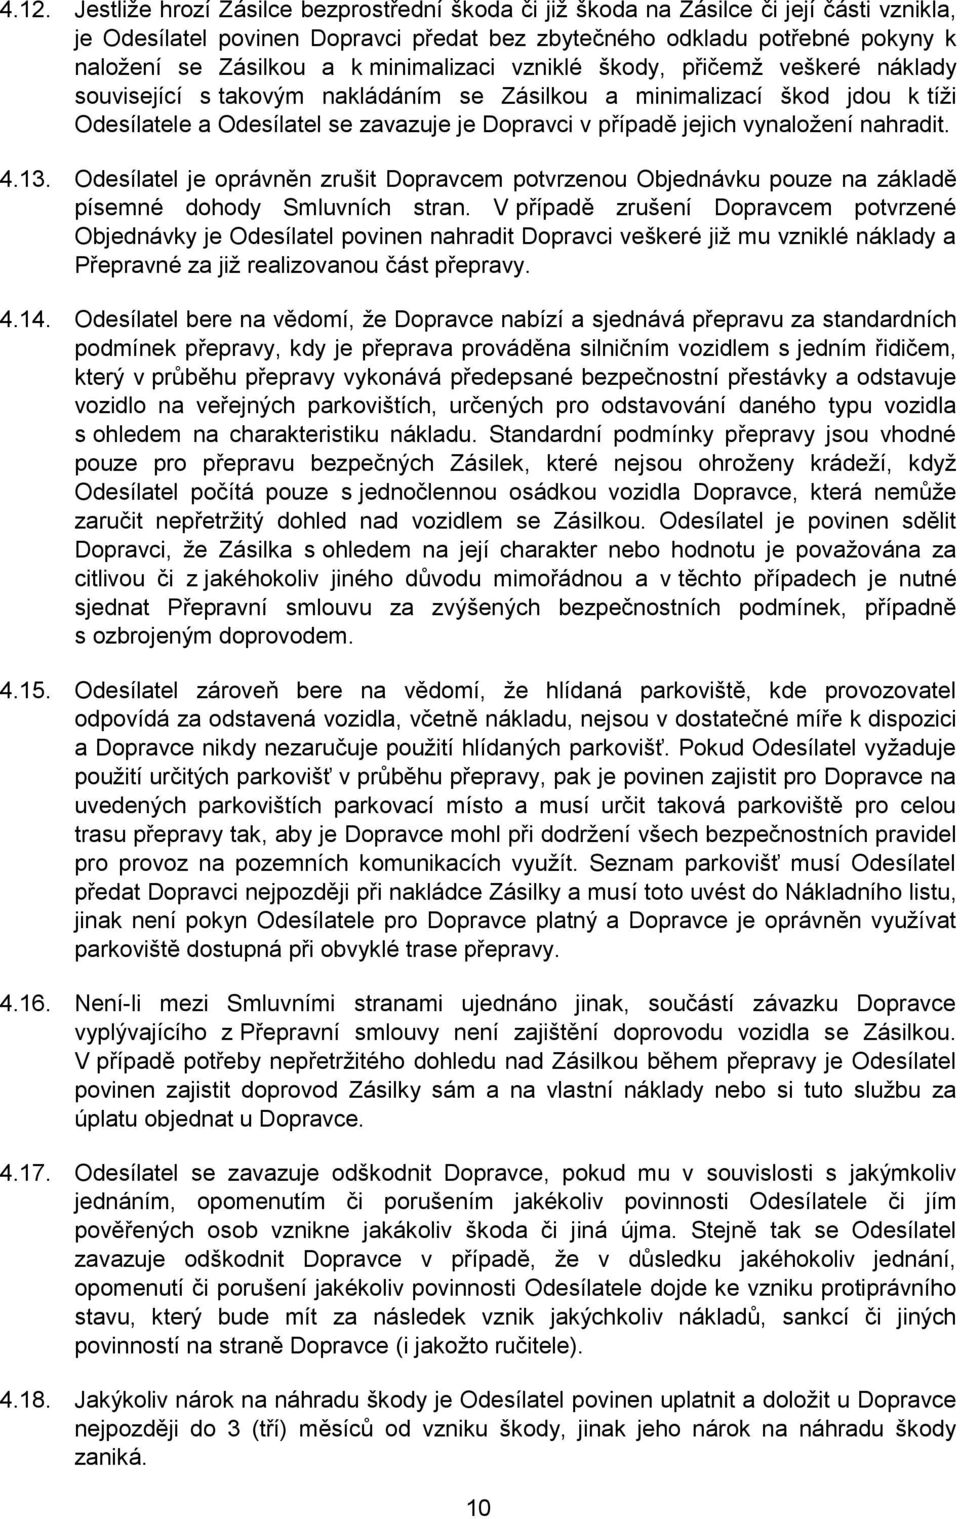 vynaložení nahradit. 4.13. Odesílatel je oprávněn zrušit Dopravcem potvrzenou Objednávku pouze na základě písemné dohody Smluvních stran.